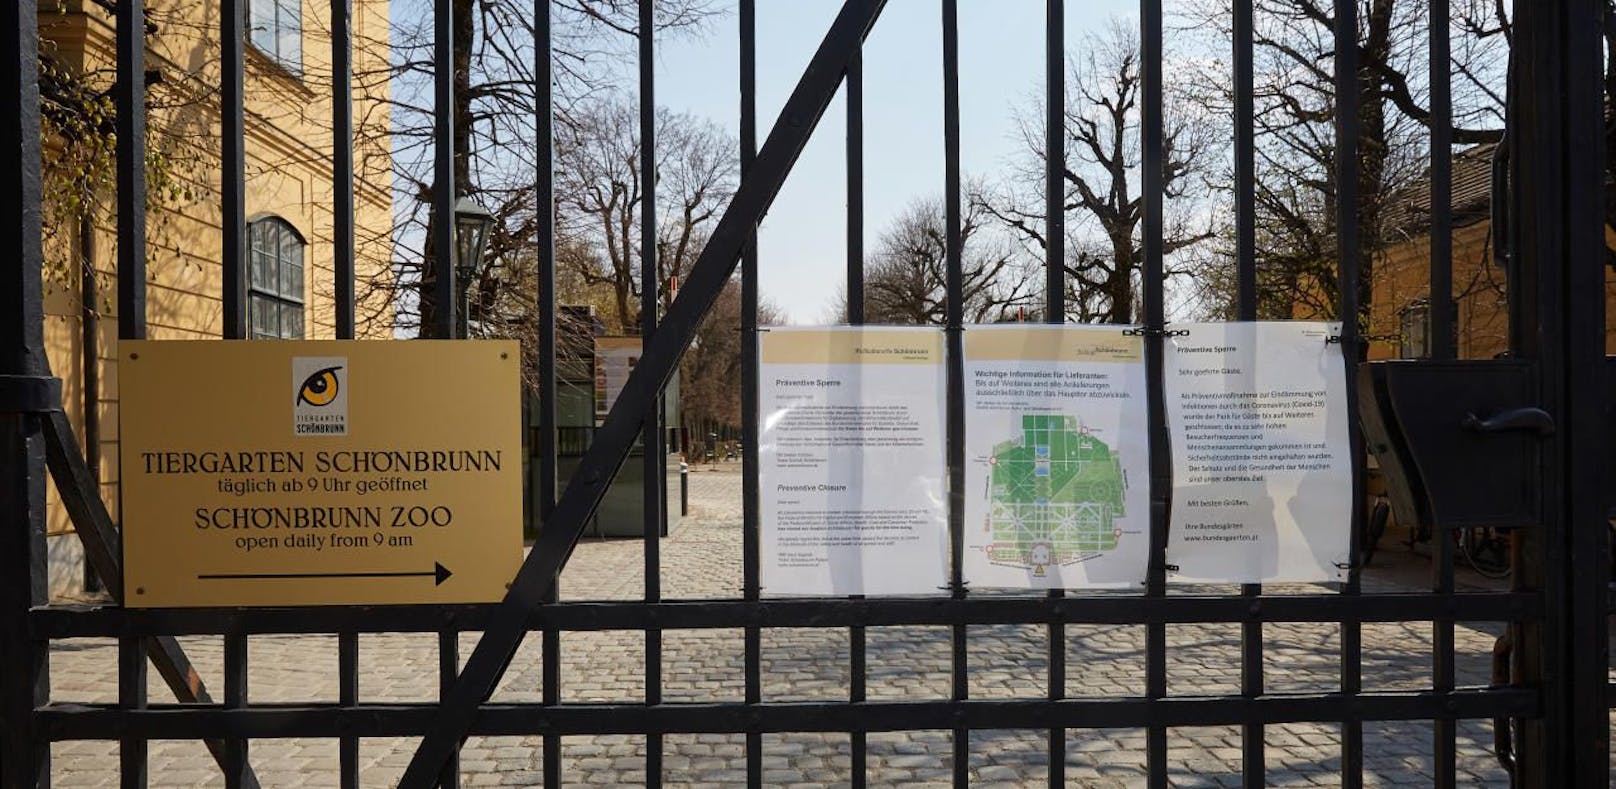 Derzeit ist der Schönbrunner Schlosspark noch gesperrt, ab 14.4. ist er wieder geöffnet.